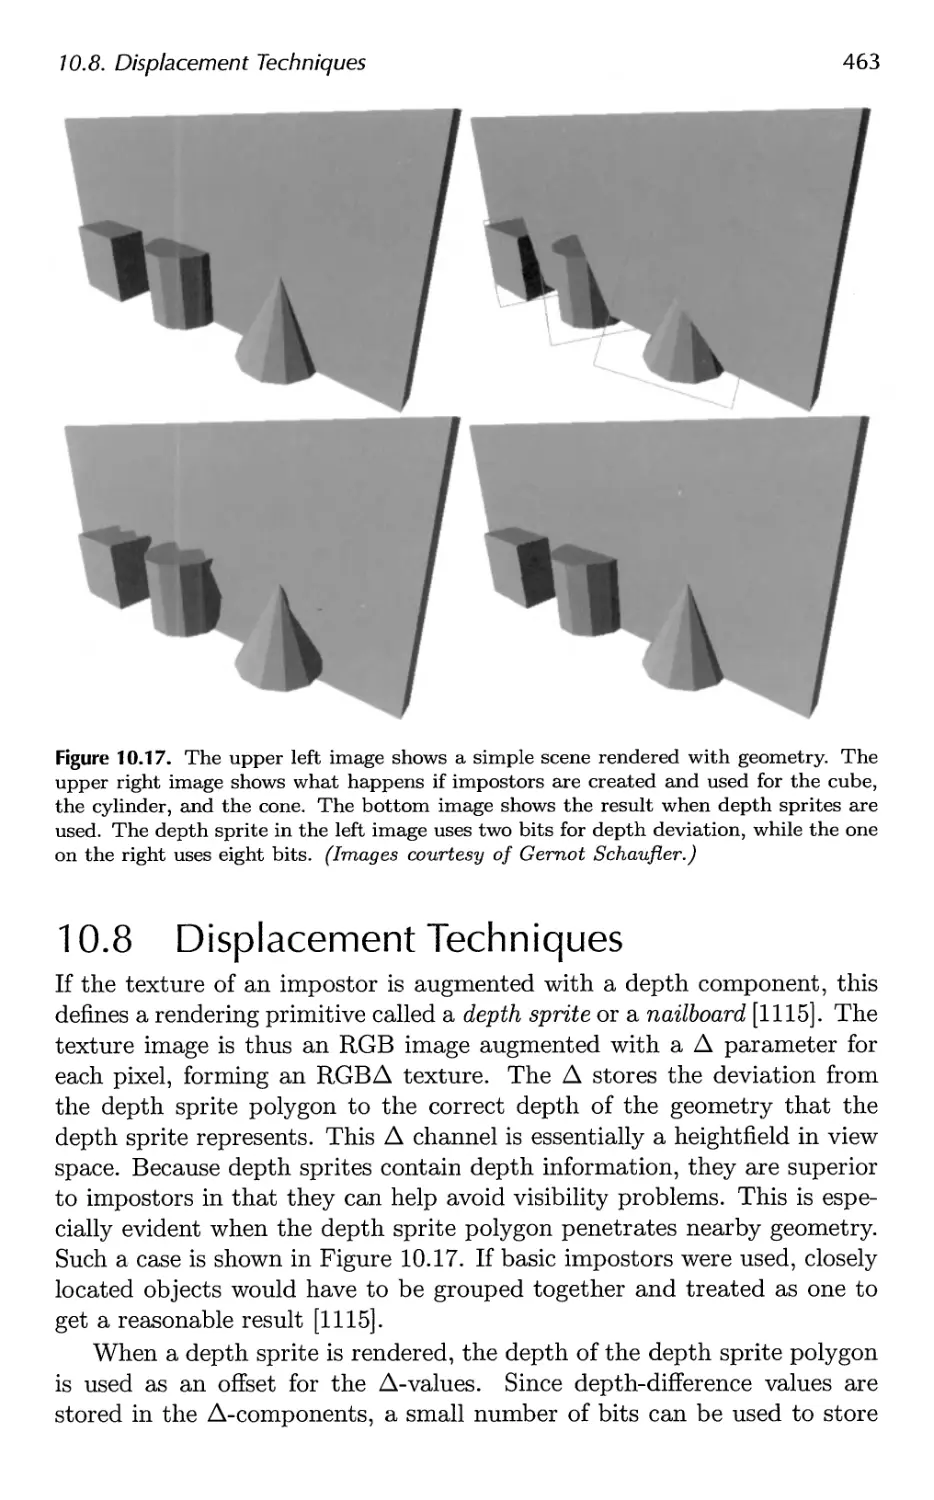 10.8 Displacement Techniques